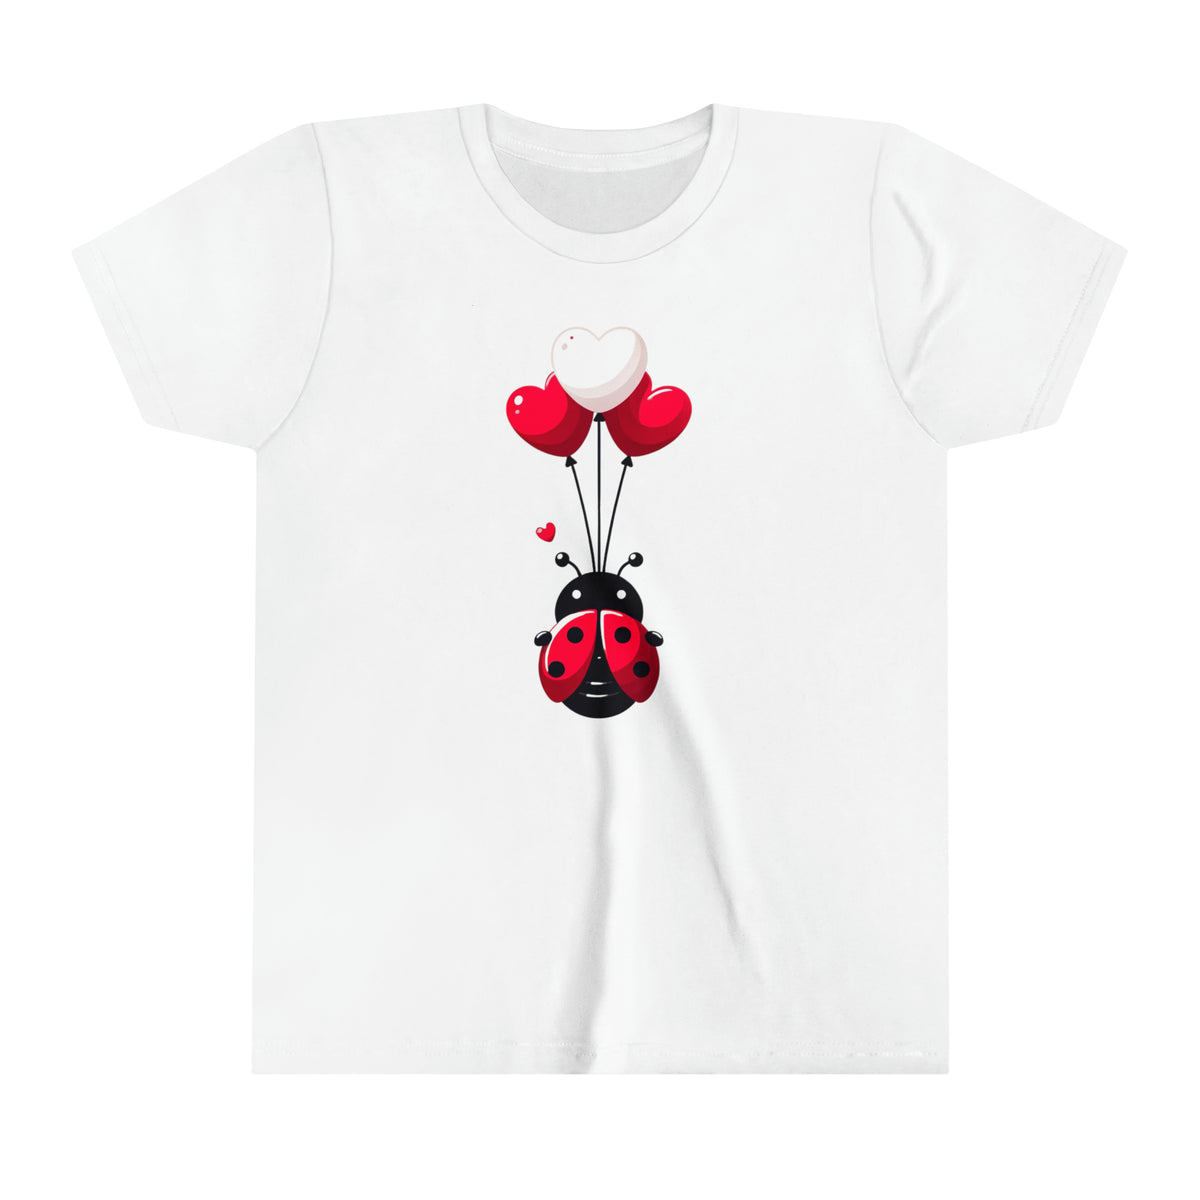 Cute Ladybug Heart Balloons Valentine Shirt | Ladybug Lover Gift | Lady Bug Shirt | Youth Jersey T-shirt